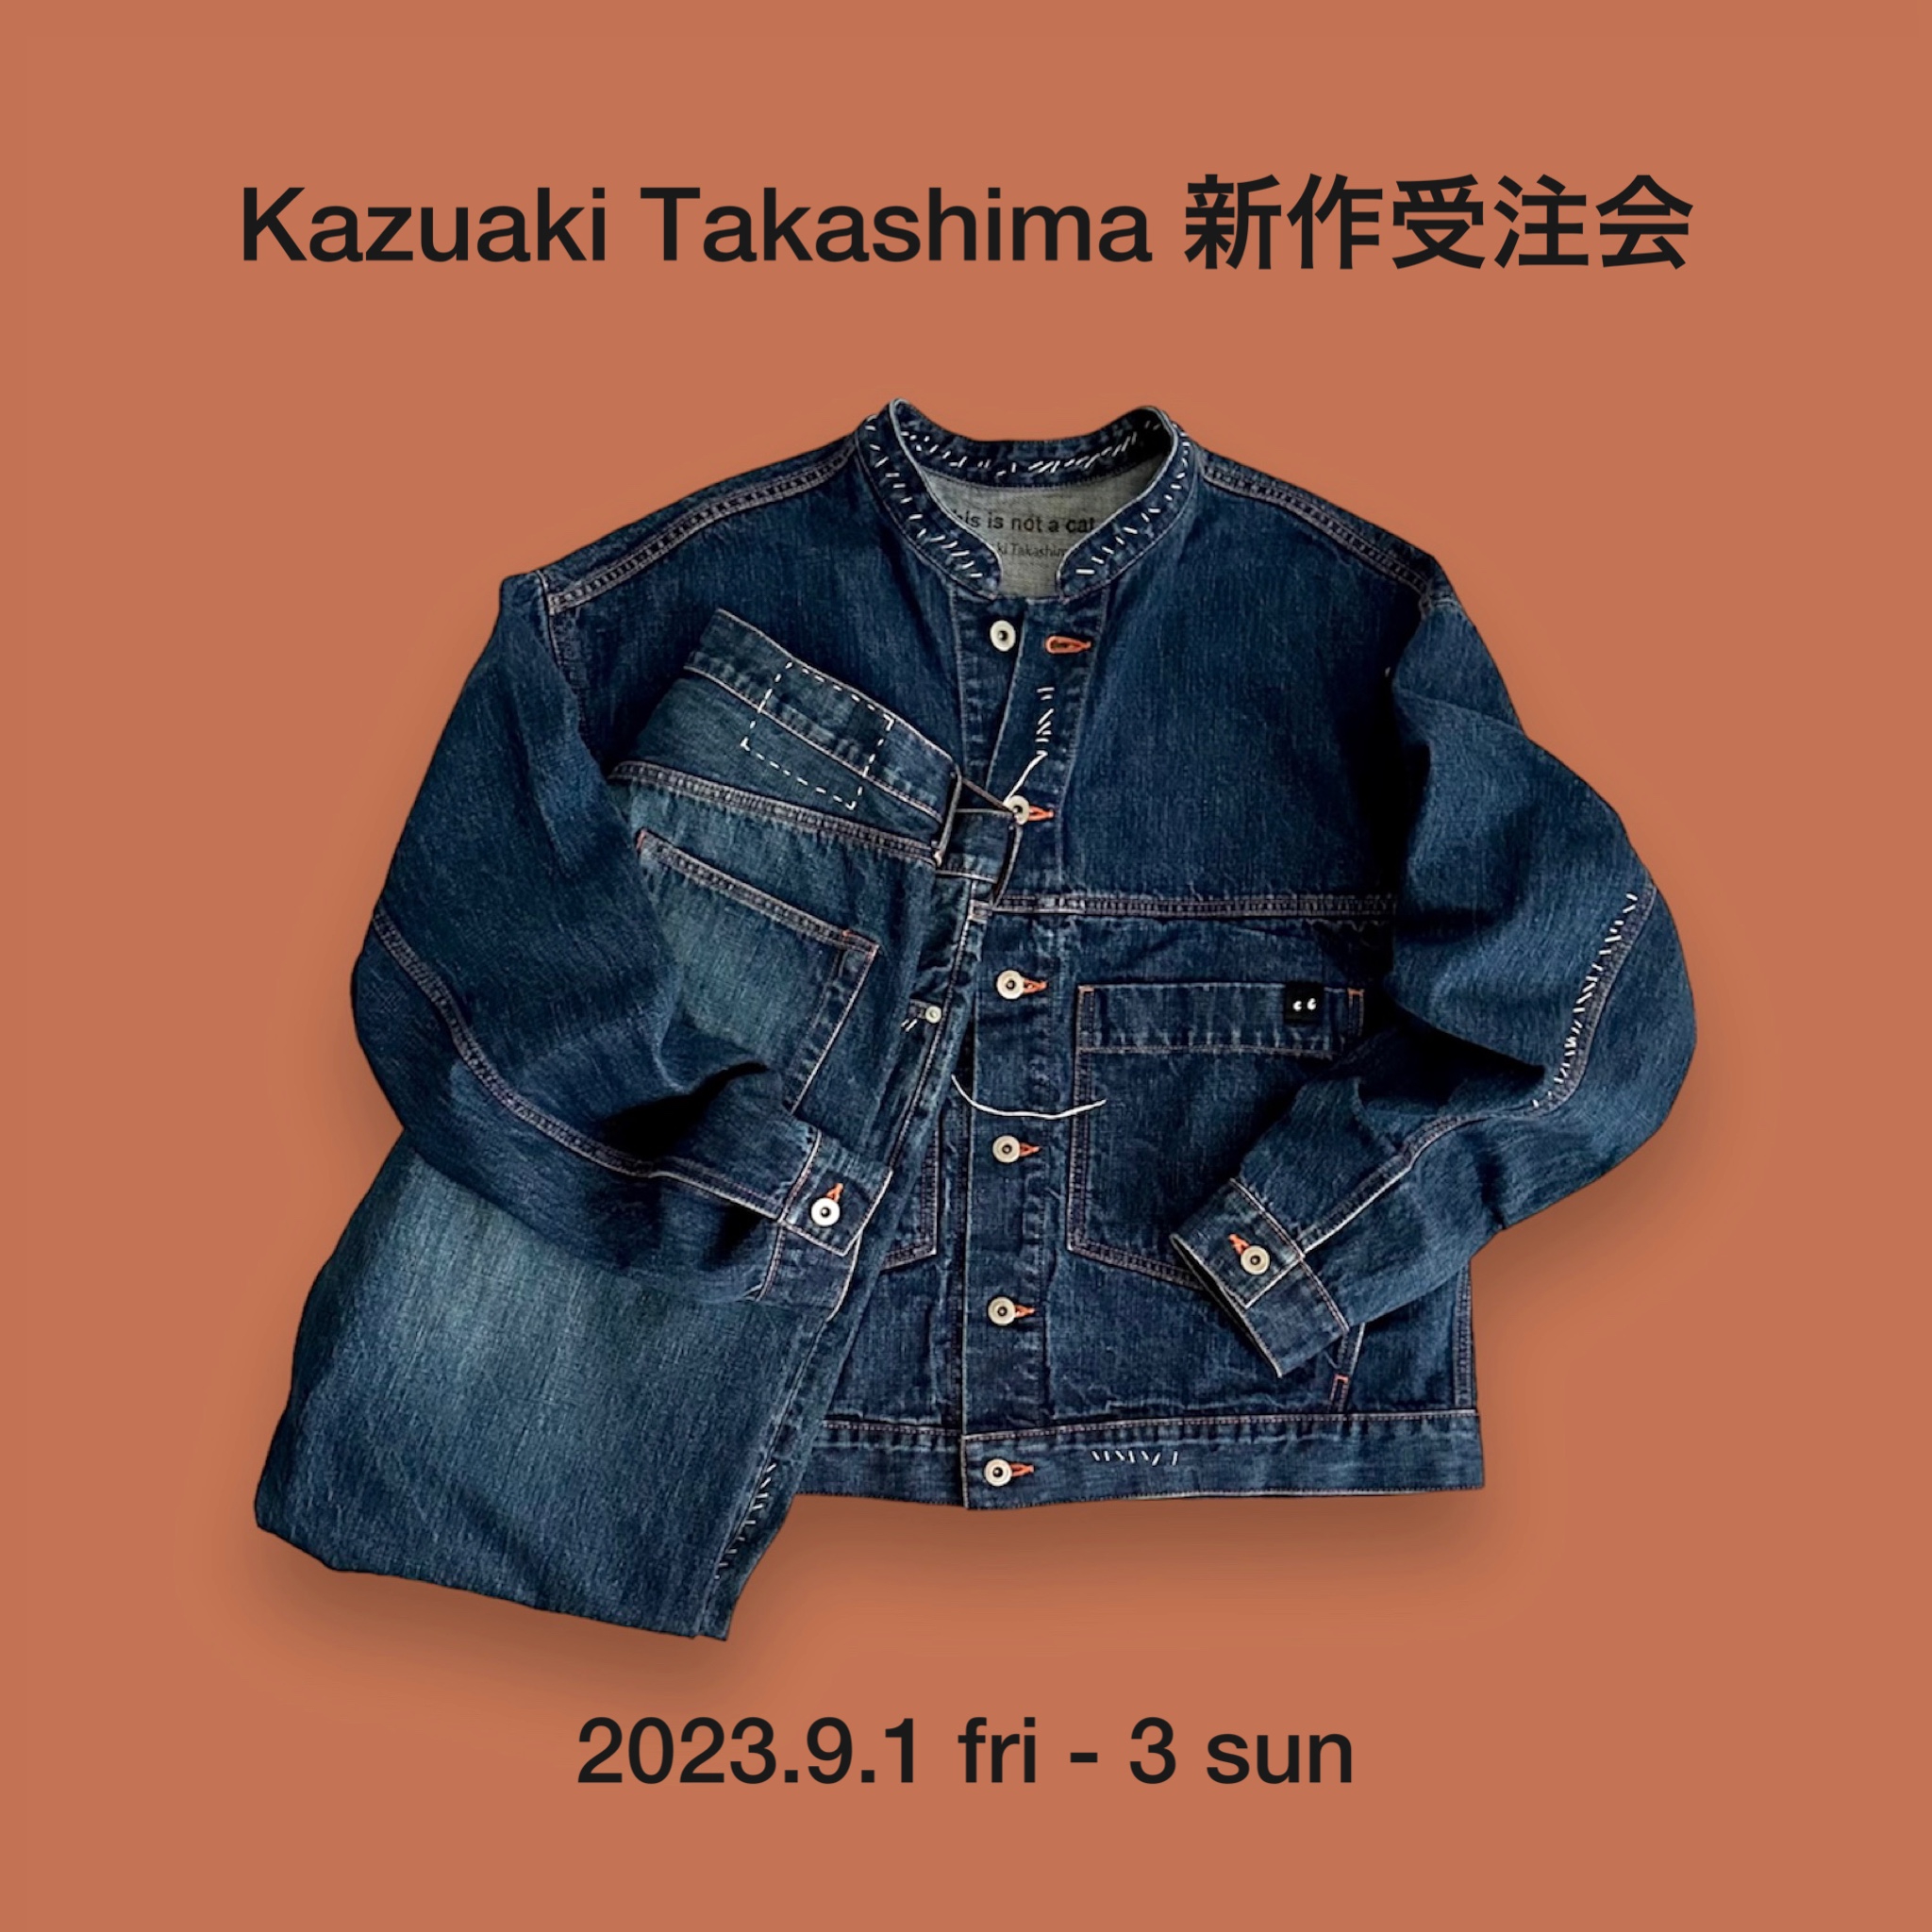 News | Kazuaki Takashima